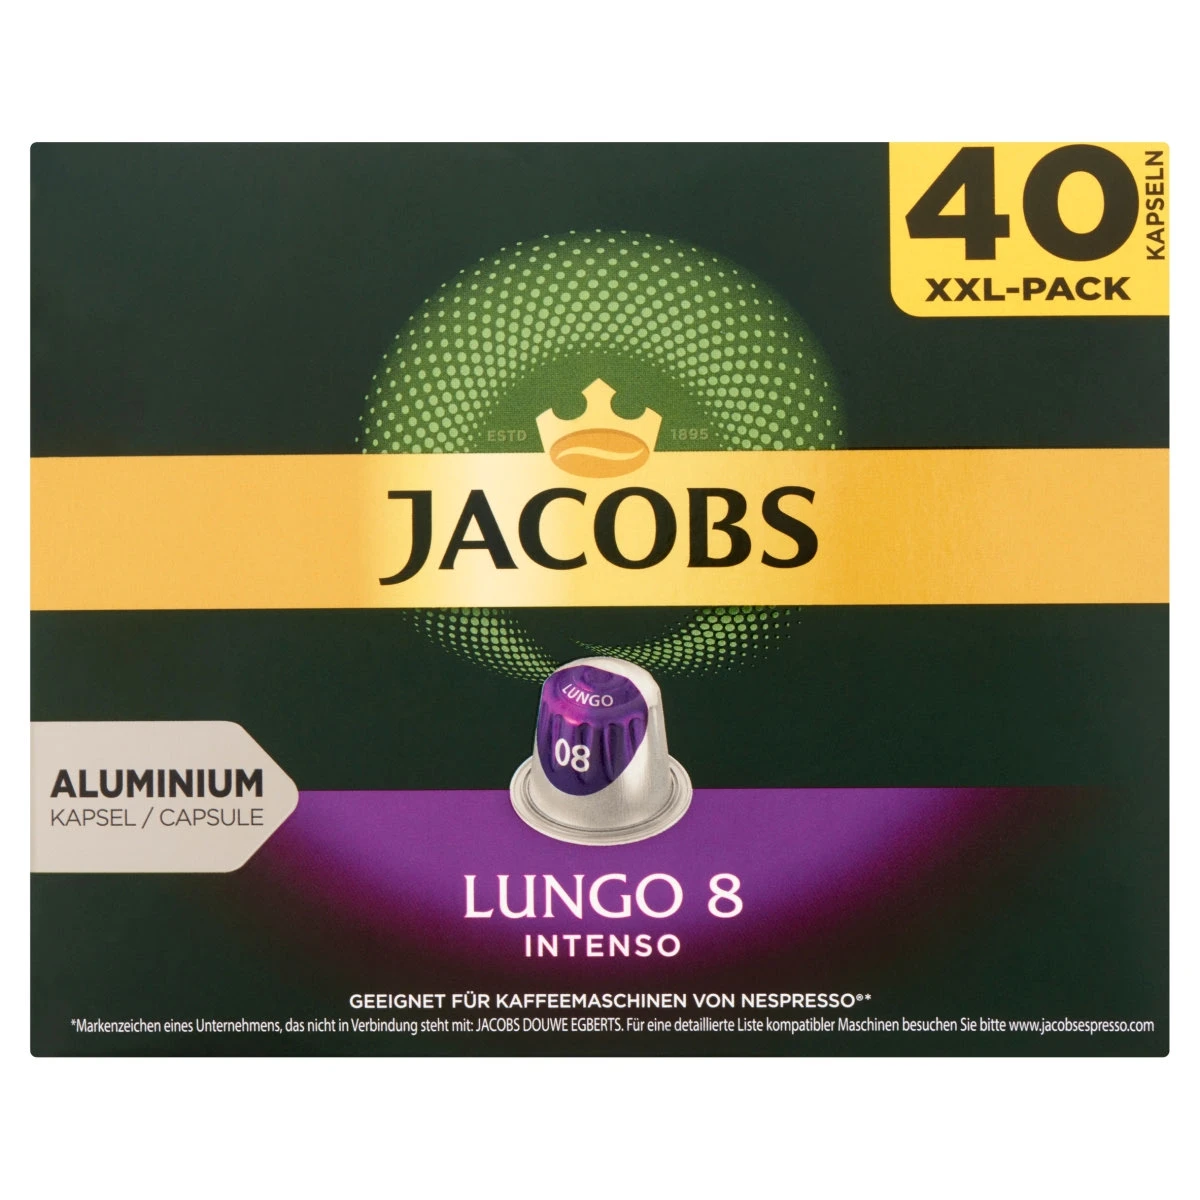 Jacobs Lungo 8 Intenso őrölt pörkölt kávé kapszulában 40 db 208 g